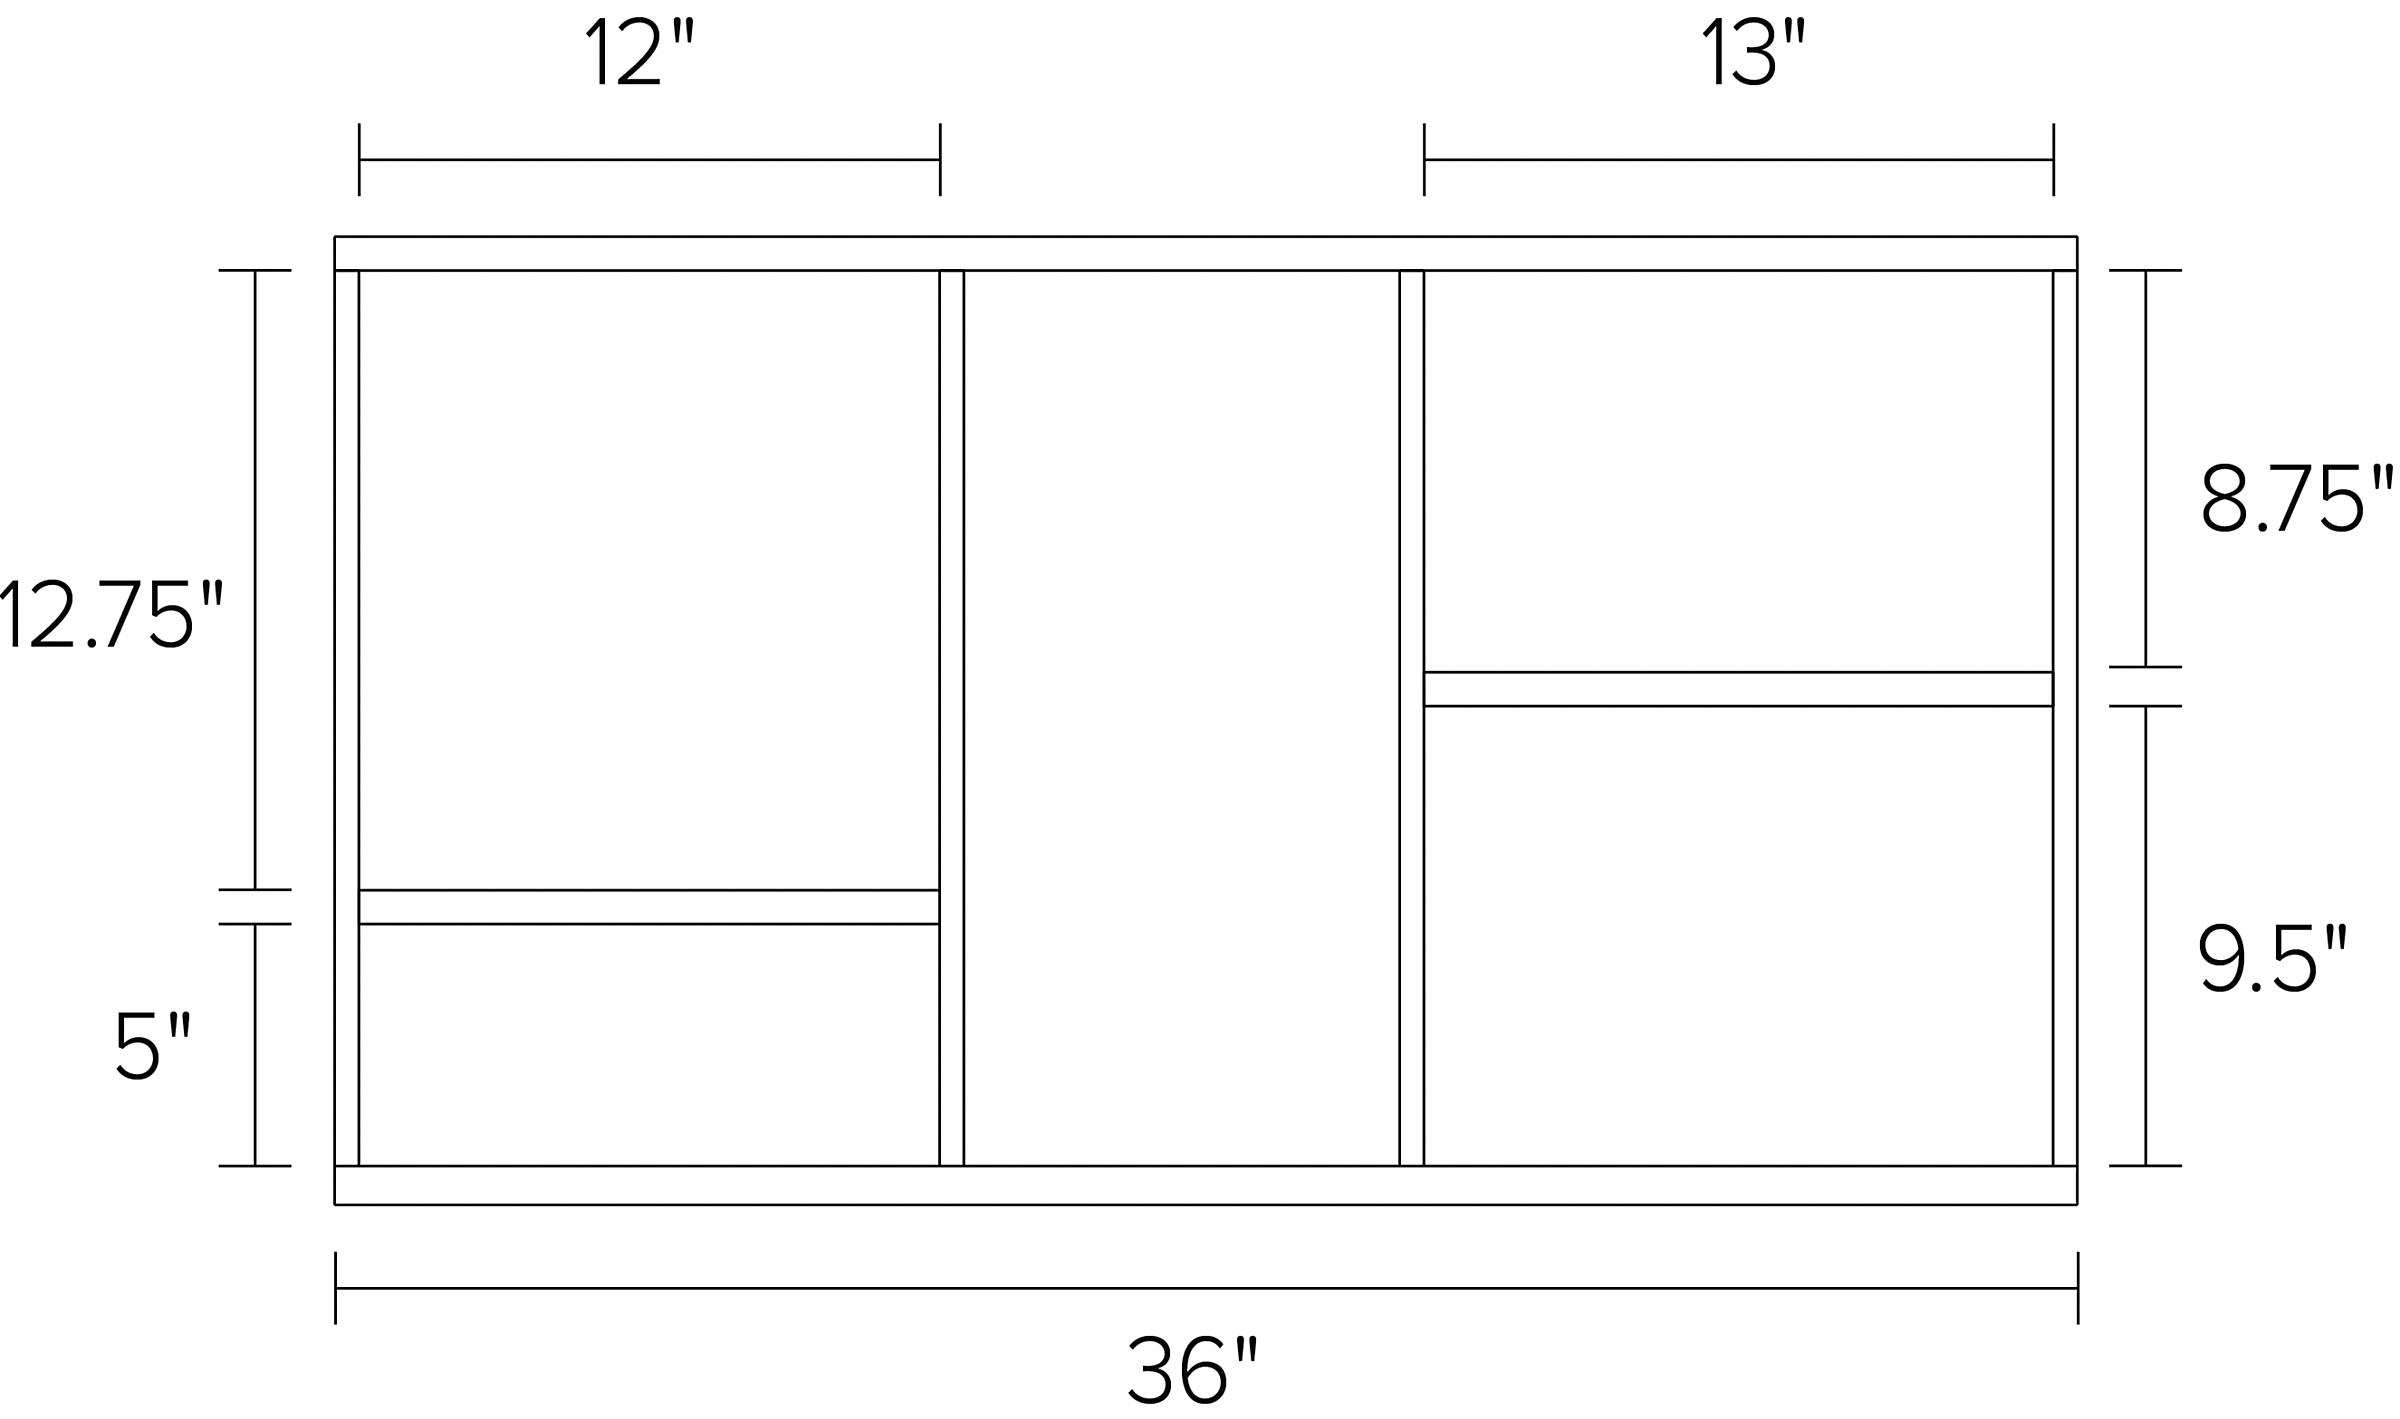 Foshay 36w 20h Four-Shelf Wall Unit Dimension Drawing.